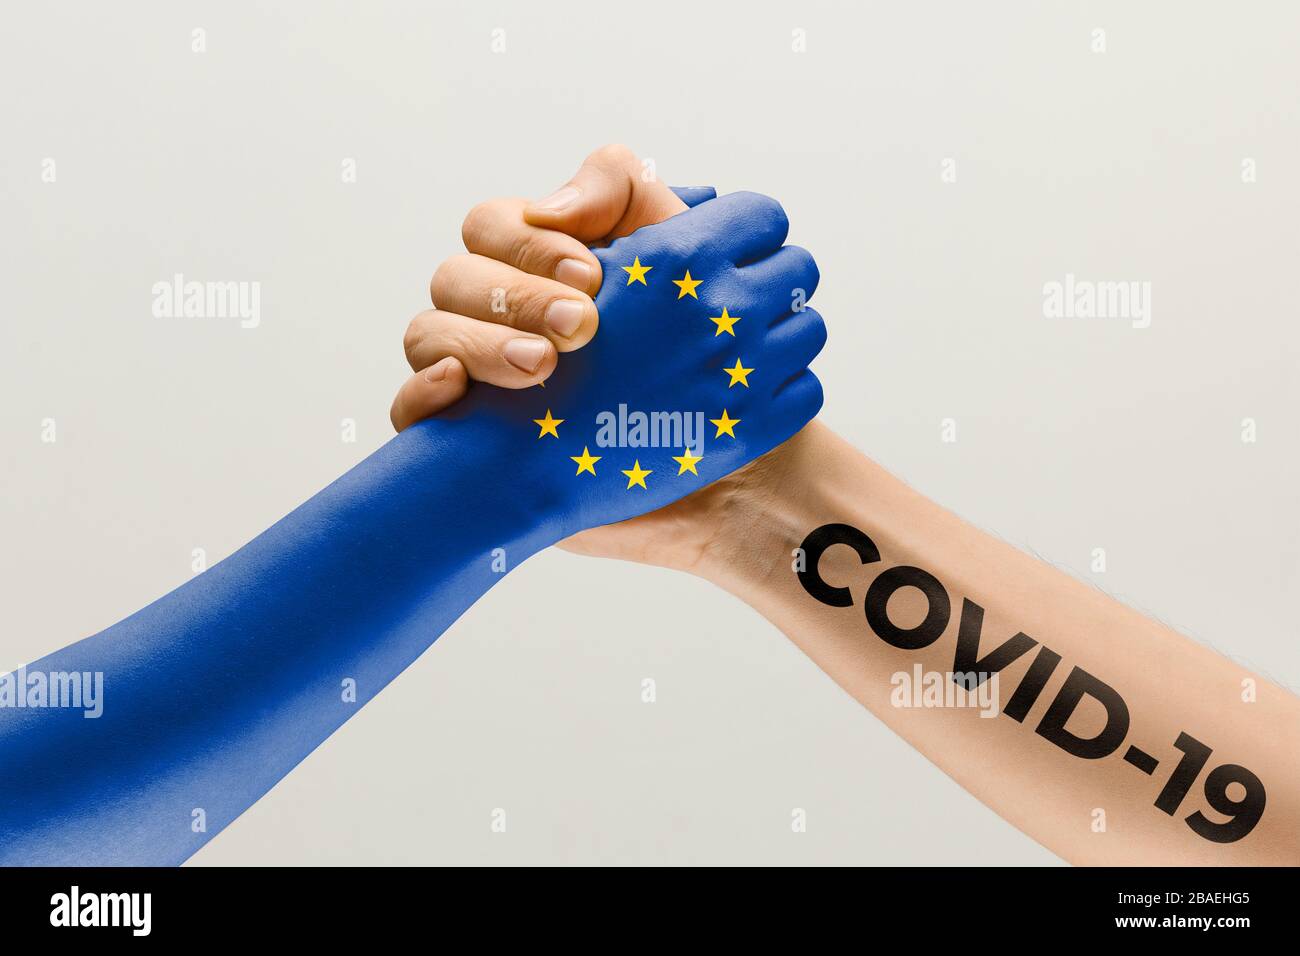 Menschliche Hände, die in der Flagge der Europäischen Union und des Coronavirus eingefärbt sind - Begriff der Virusverbreitung. Das Händeschütteln ist Gefahr, die Art und Weise der weltweiten Epidemie. Bleiben Sie sicher. Prävention, Sicherheit, Pandemiekonzept. Stockfoto